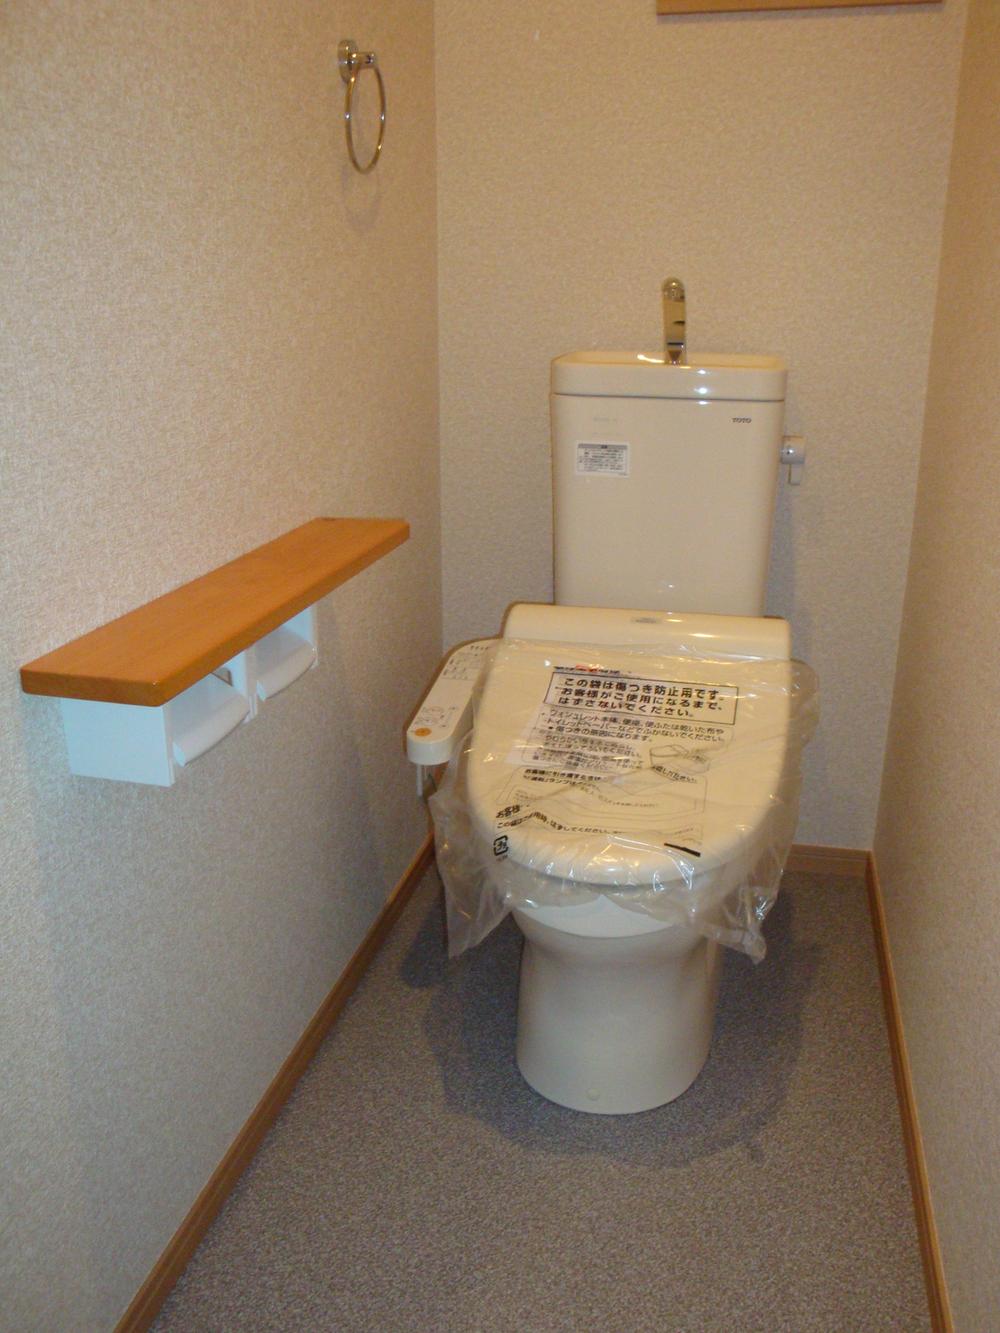 Toilet. Indoor (November 25, 2013) Shooting